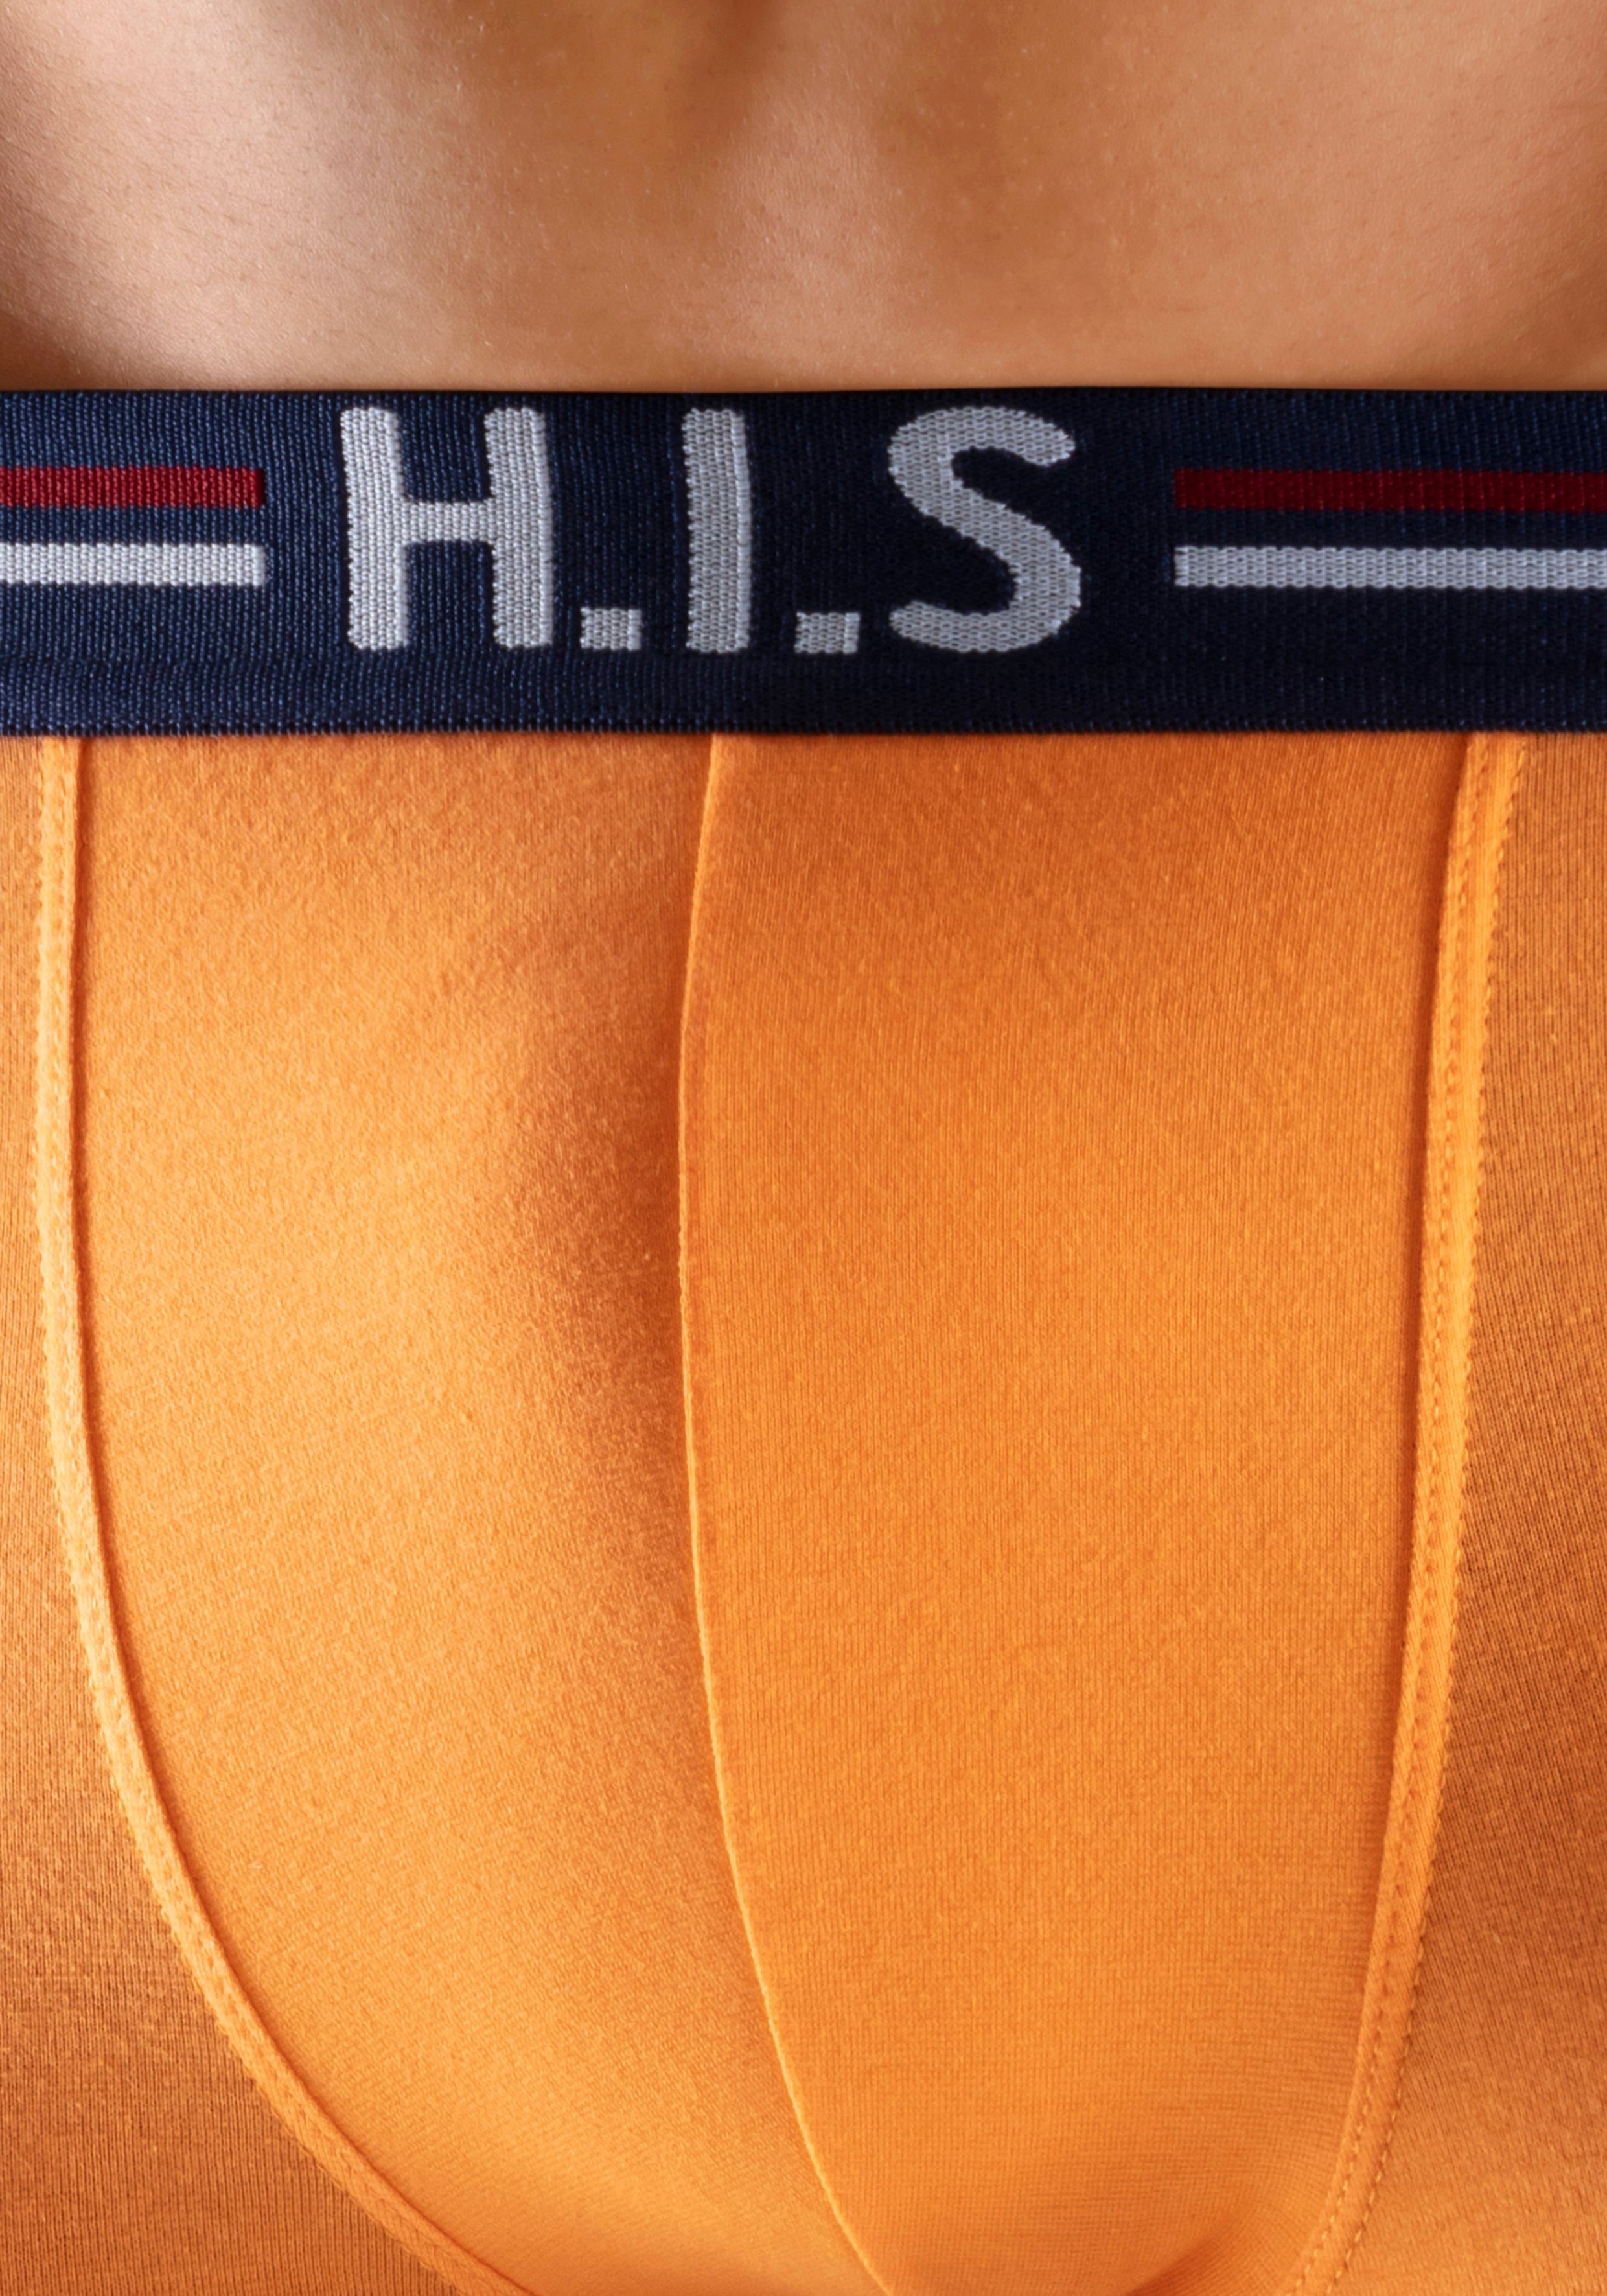 H.I.S Boxershorts (Packung, 5-St) in mit Bund Hipster-Form grau-meliert, orange, schwarz und Streifen mint, navy, Markenlogo im